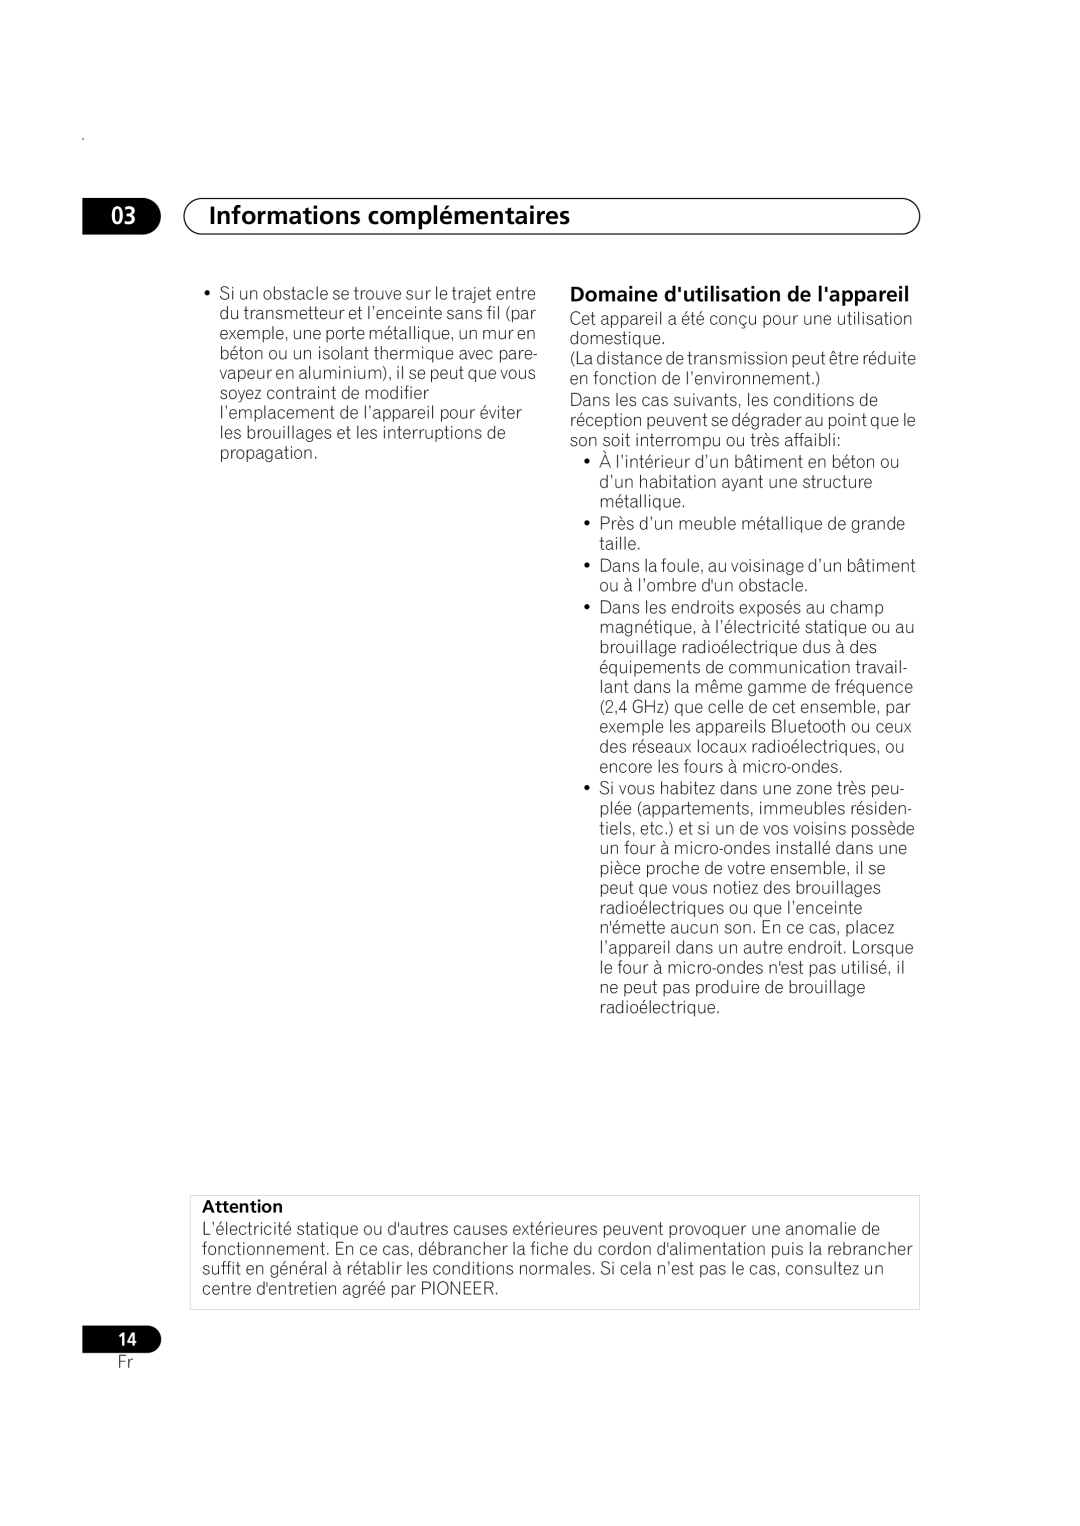 Pioneer XW-HTP550 manual 03Informations complémentaires, Domaine dutilisation de lappareil 